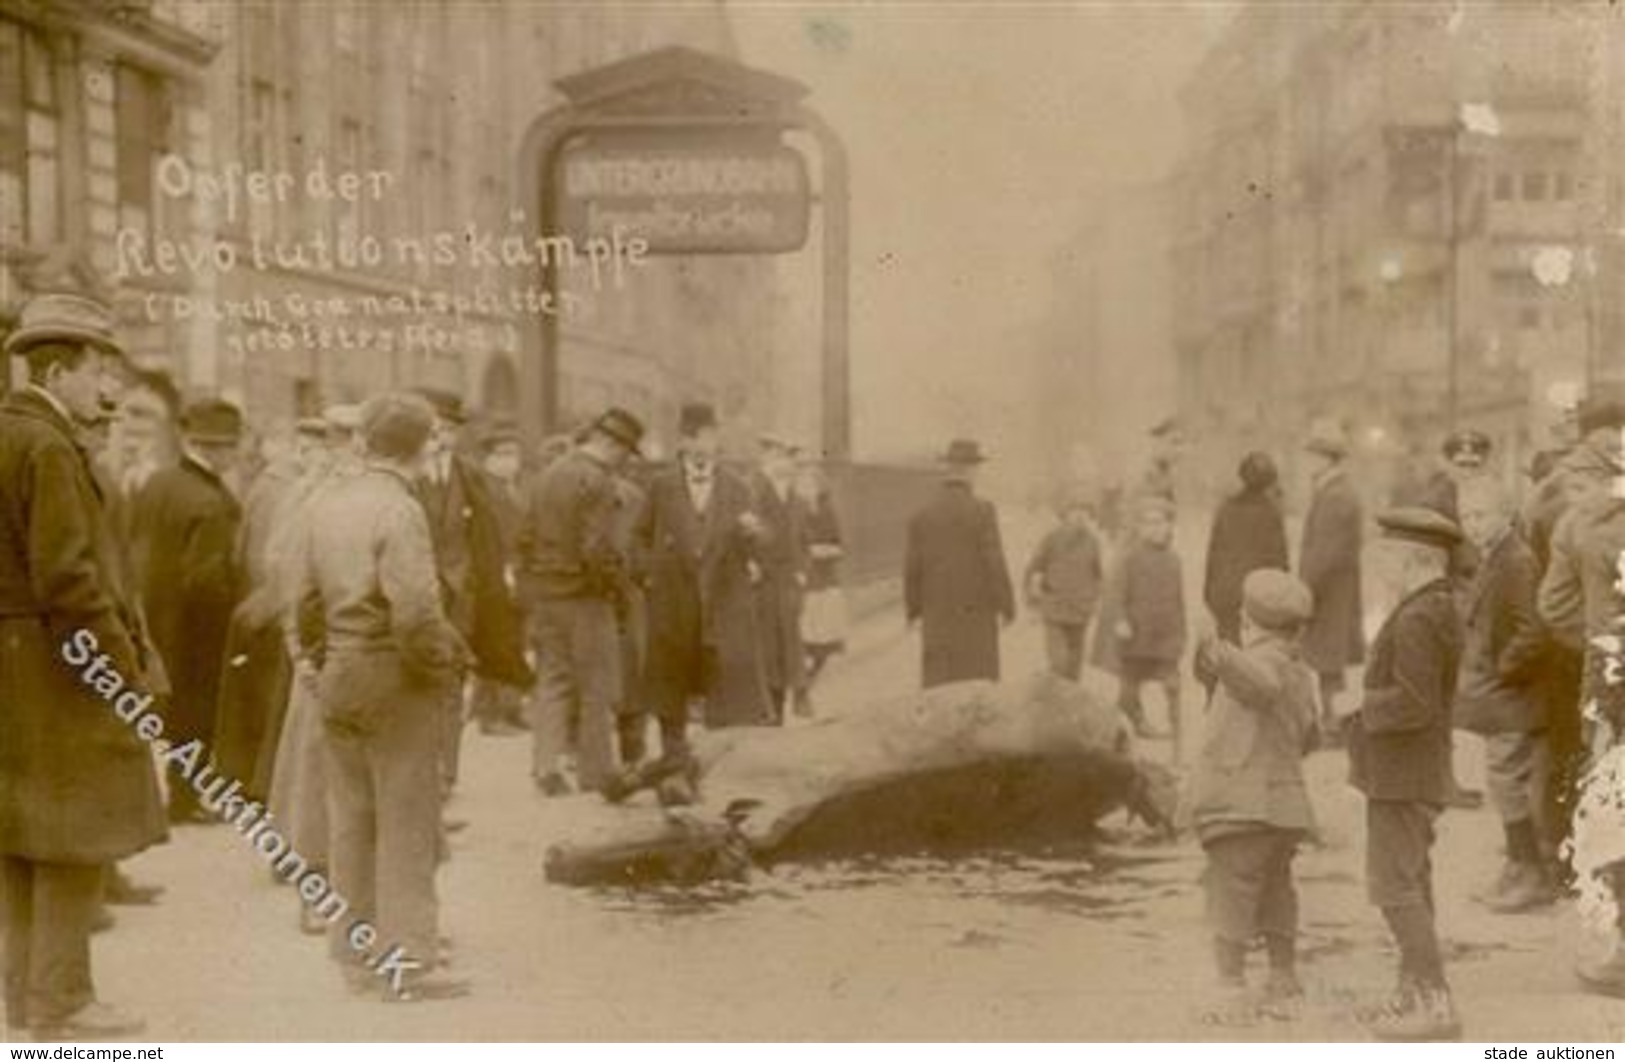 REVOLUTION BERLIN 1919 - Opfer Der Revolutionskämpfe - Durch Granatsplitter Getötetes Pferd (Eckfehler!) Selten! - Warships